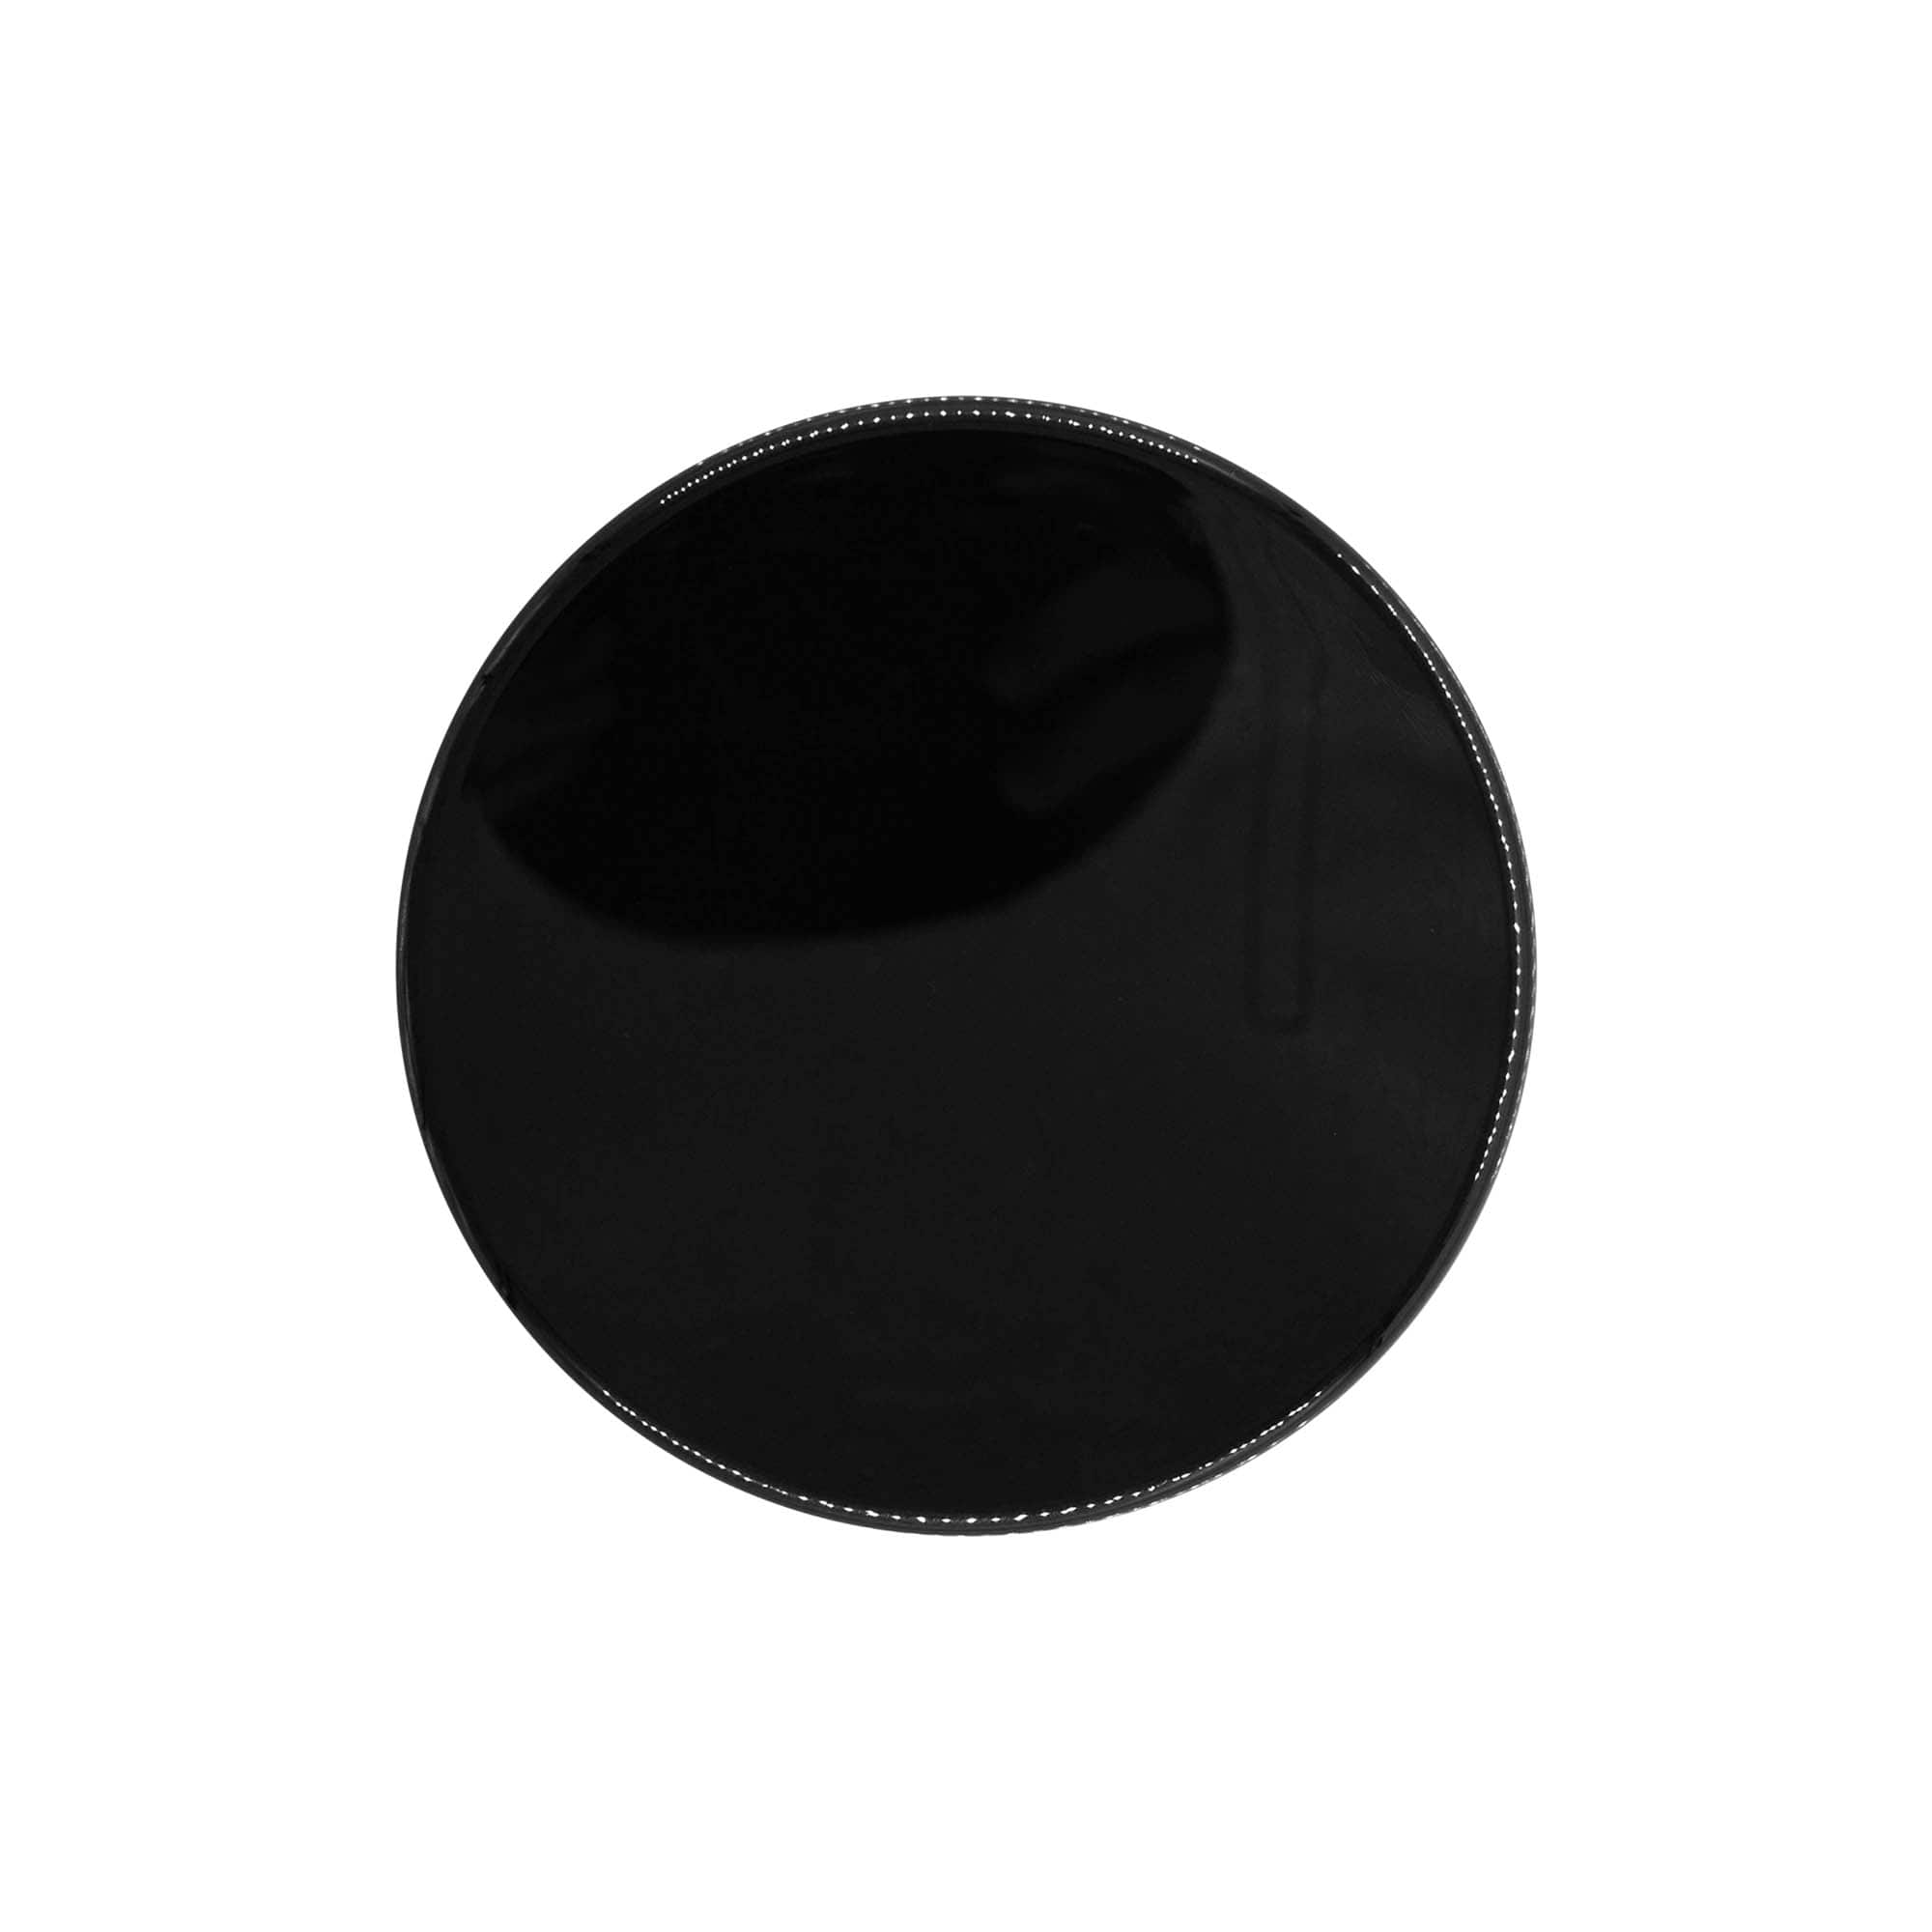 Zakrętka, tworzywo sztuczne PP, kolor czarny, do zamknięcia: GPI 100/400